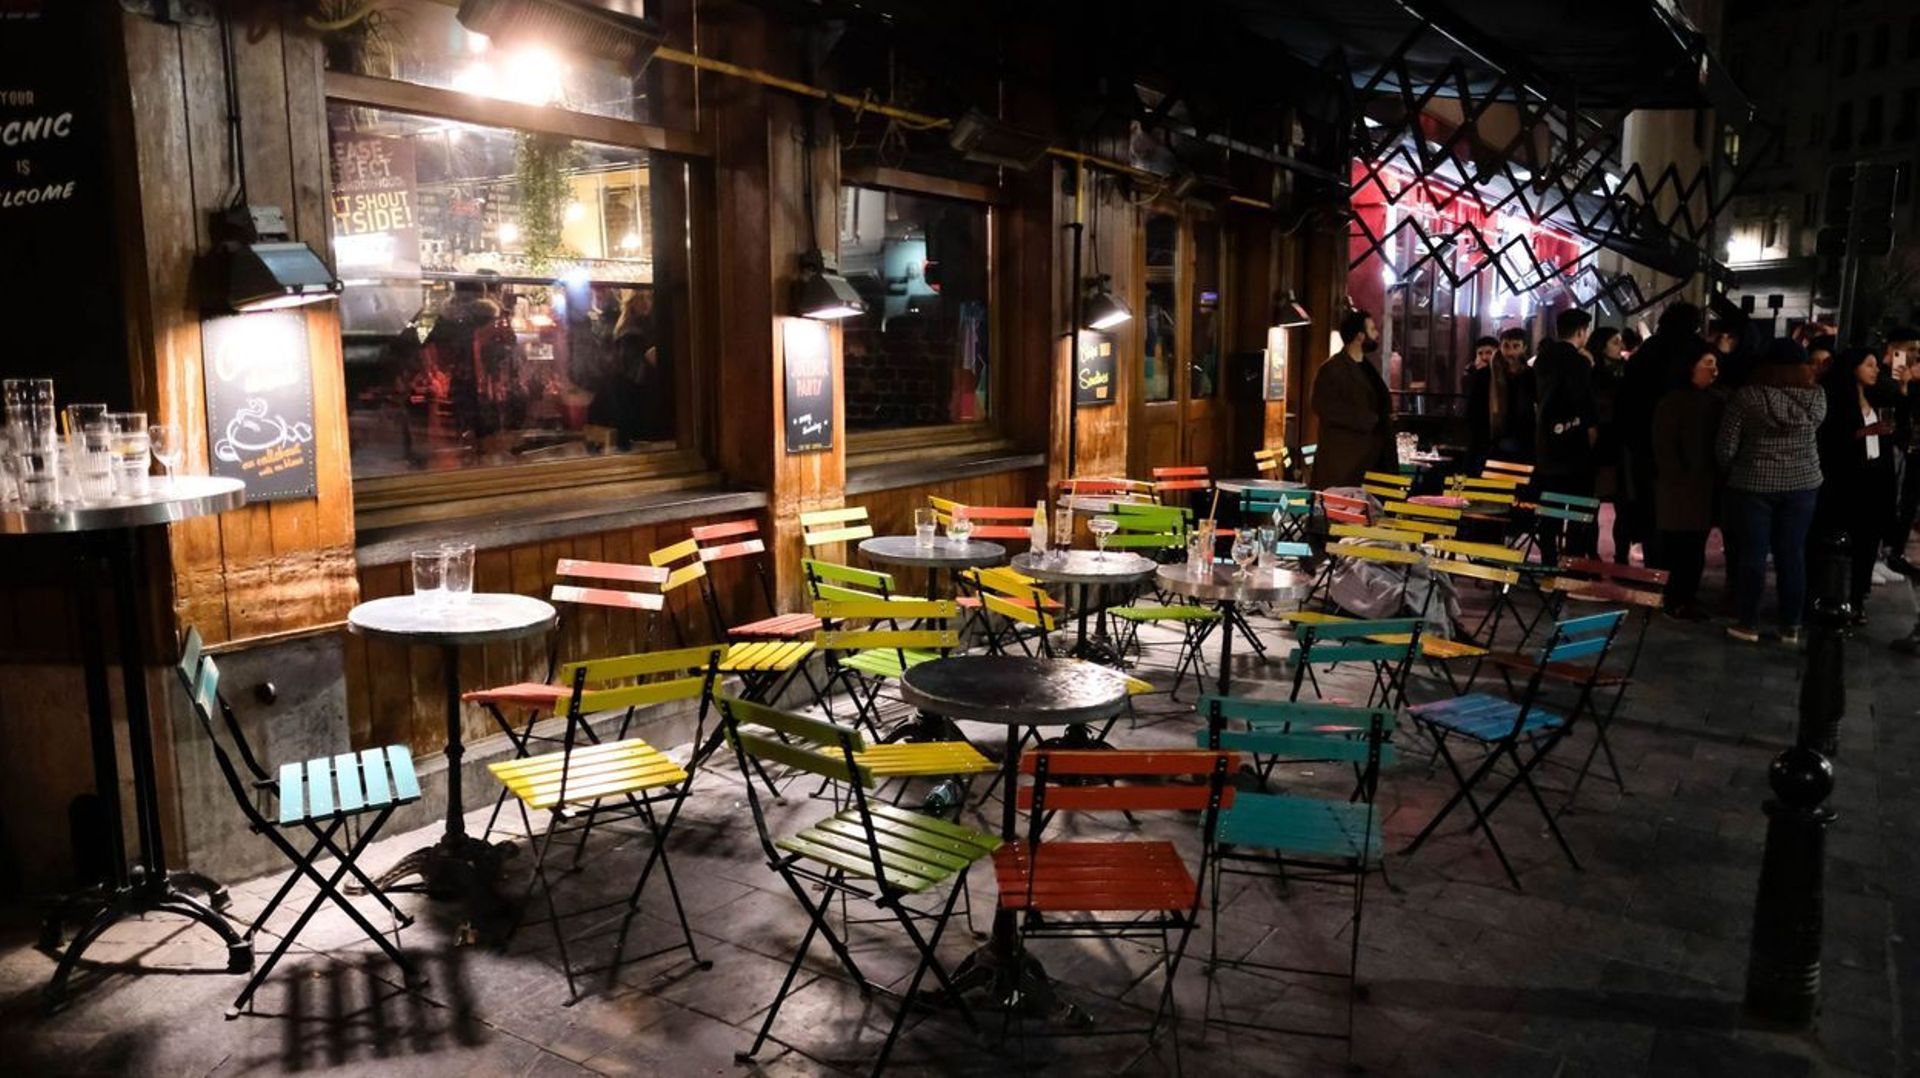 Fermeture des bars et cafés à 23h: première nuit dans le calme à Bruxelles